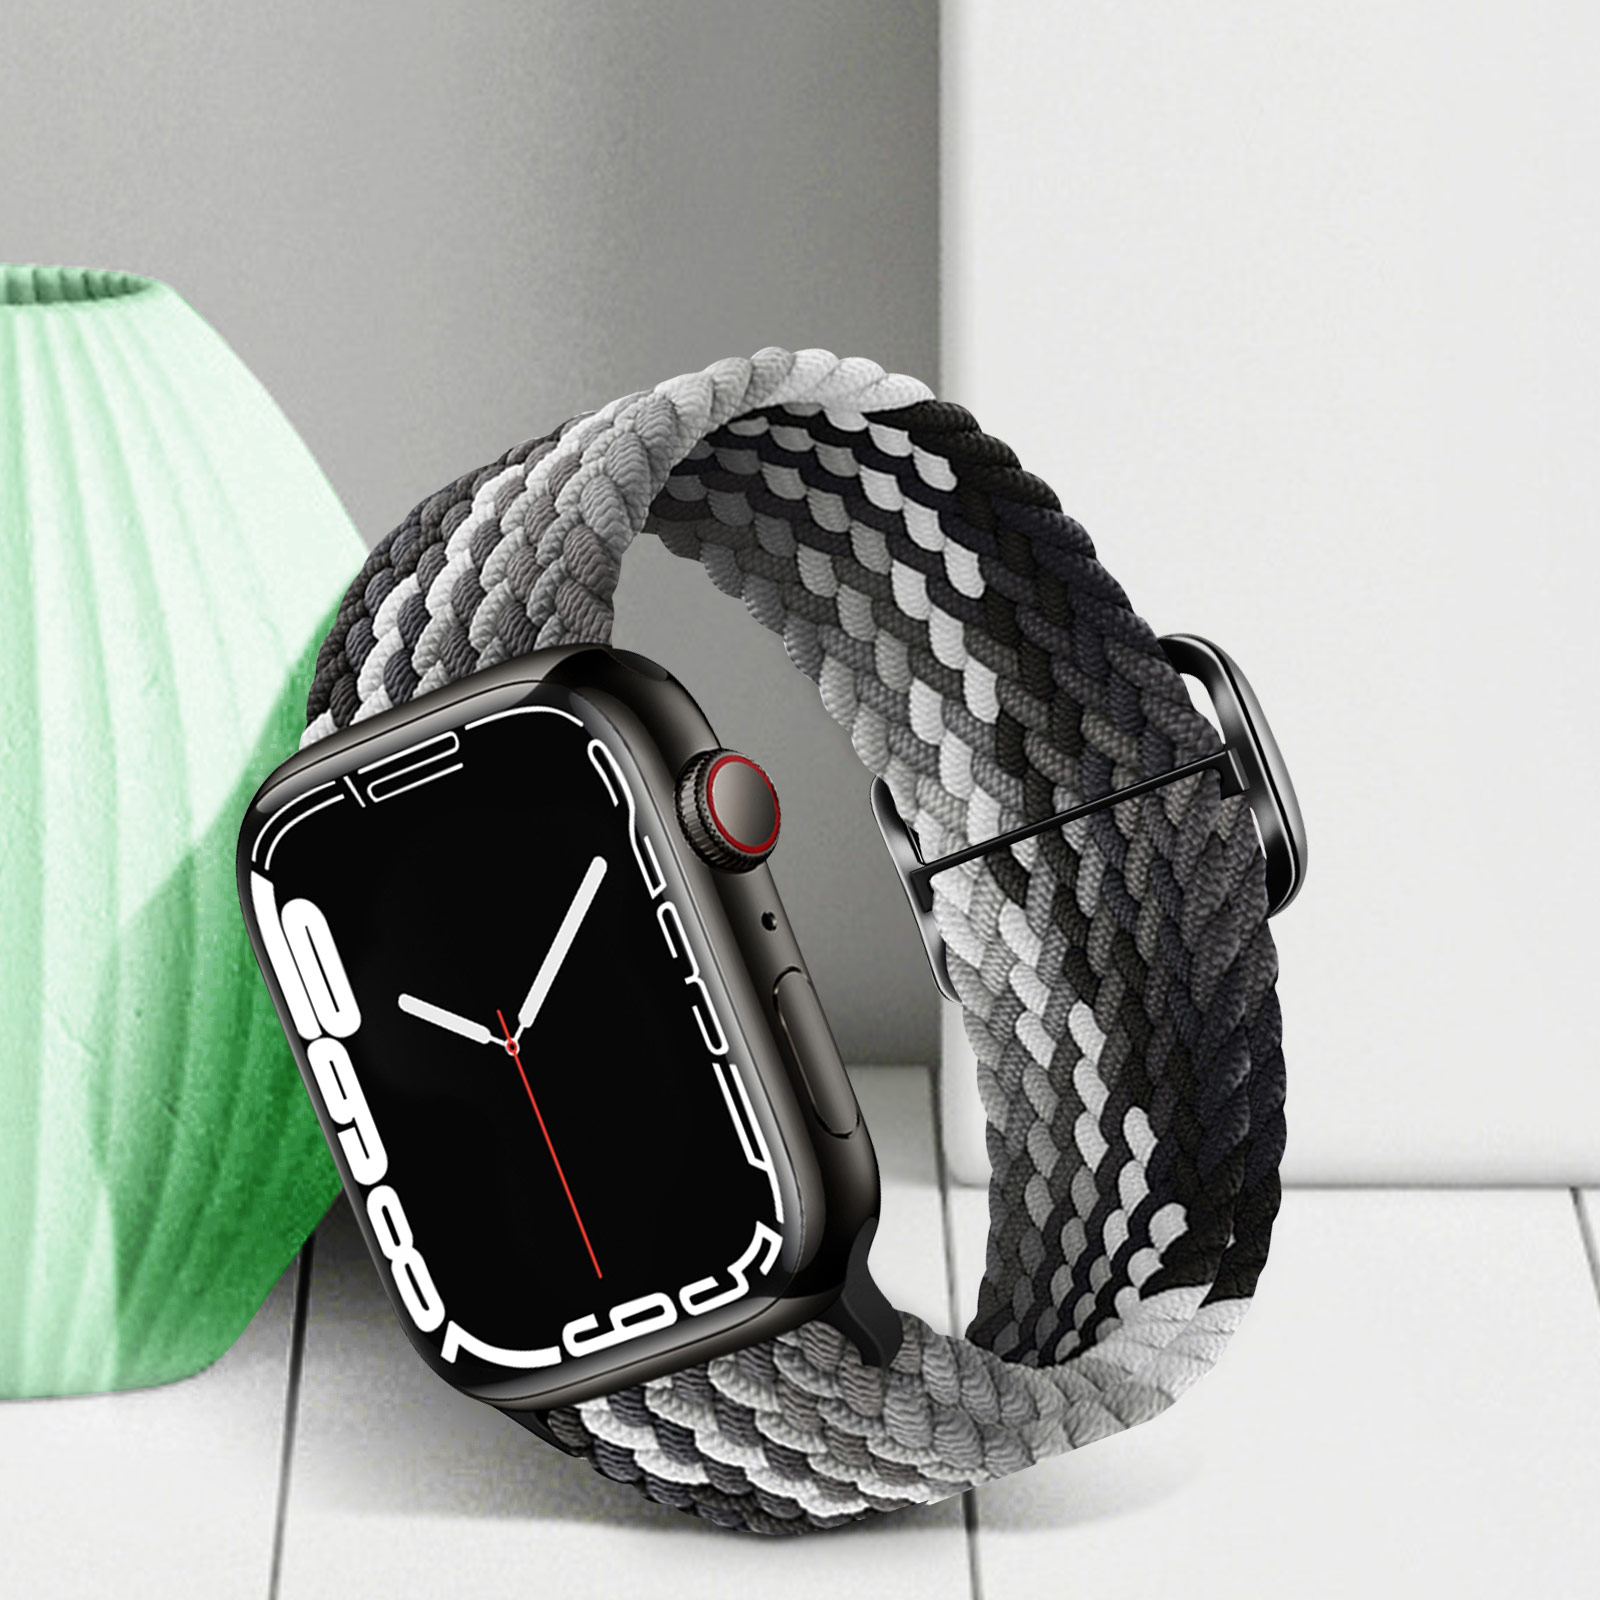 Bracelet en nylon pour Apple Watch, bracelet pour montre connectée Apple  Watch 